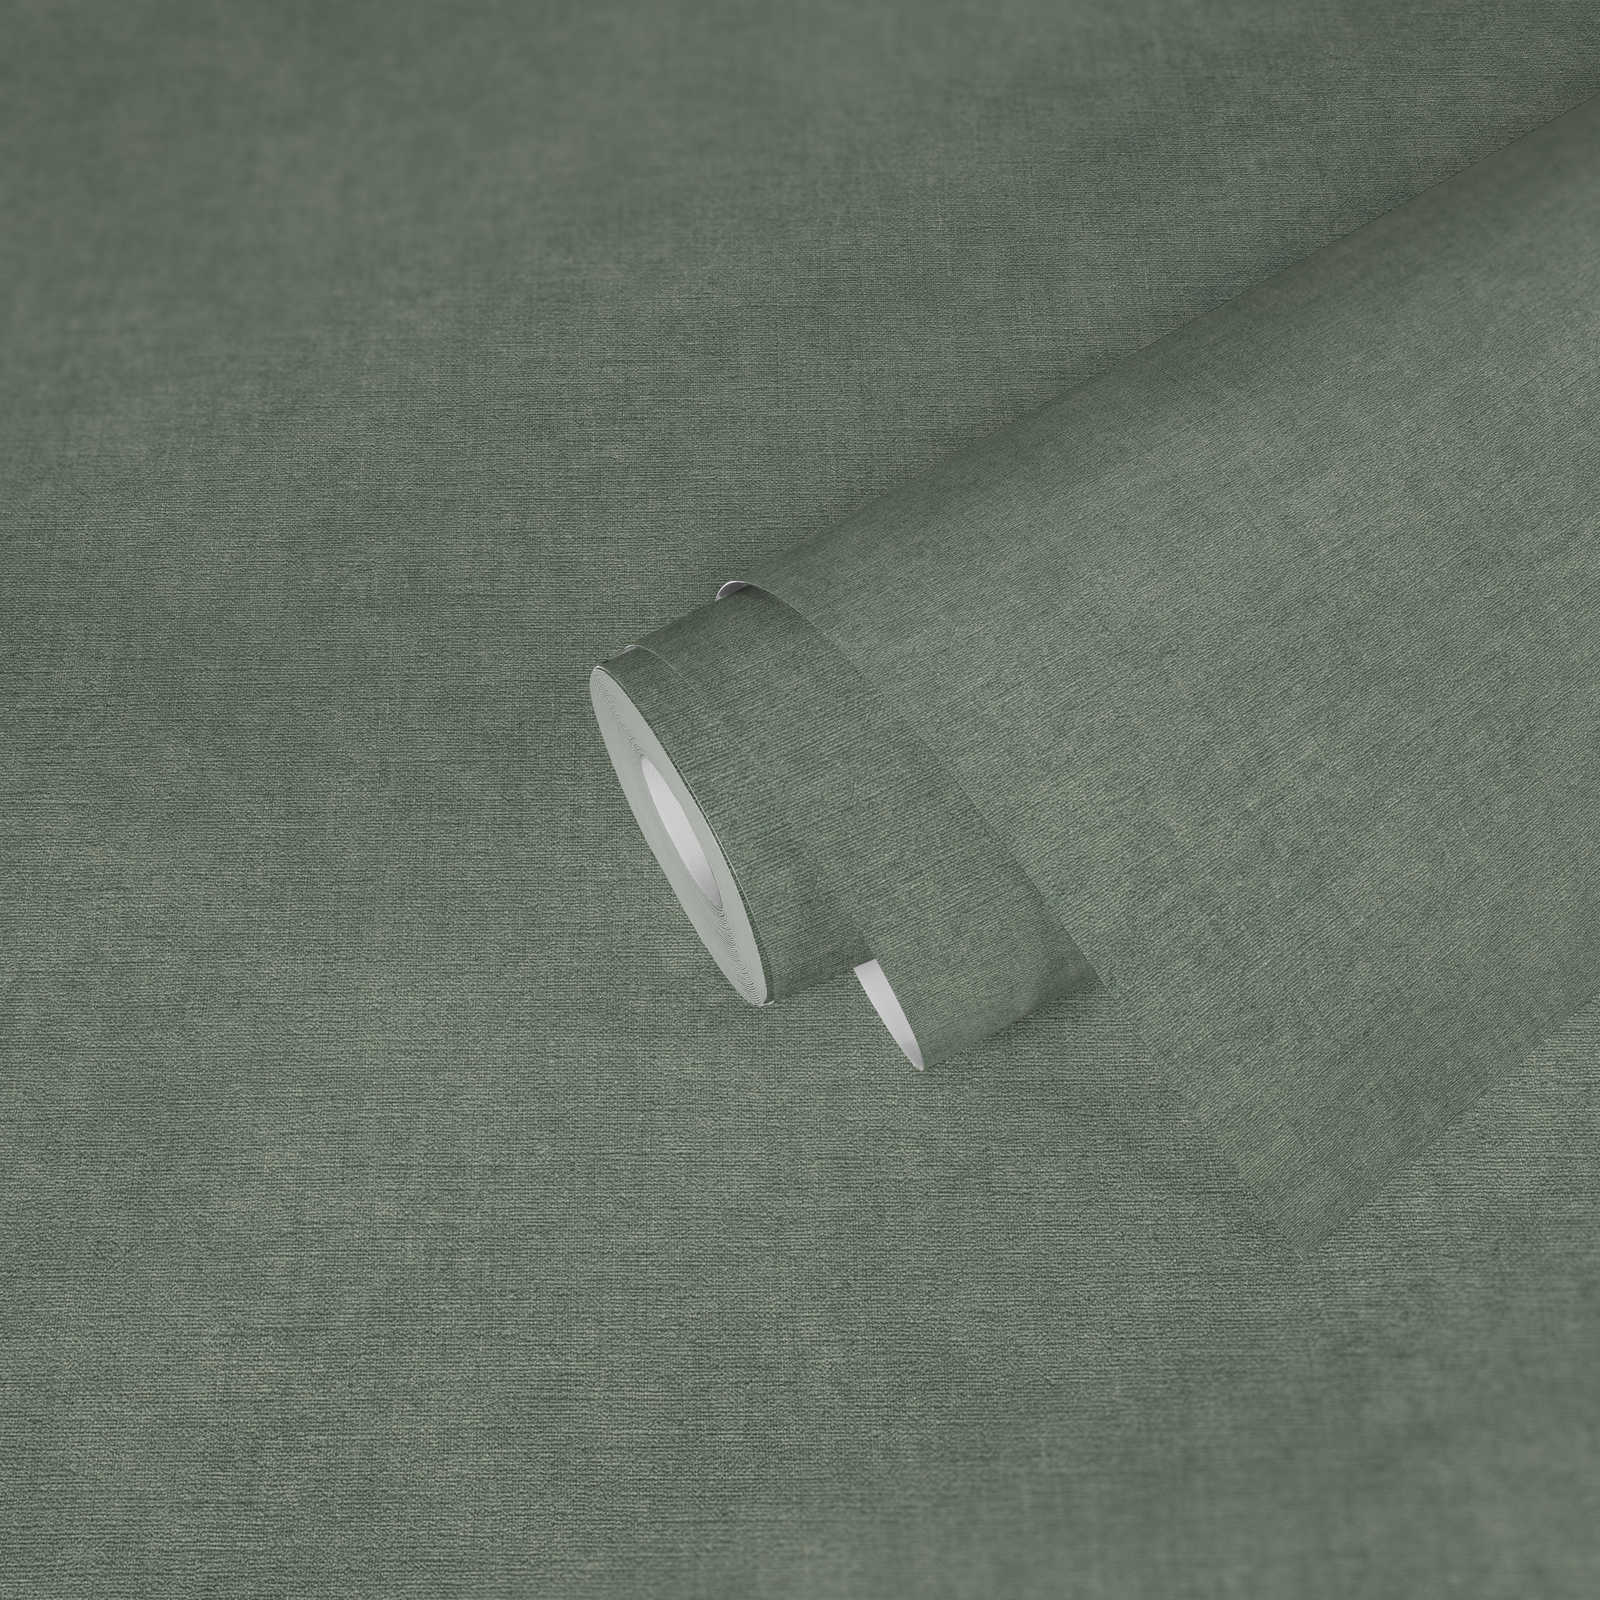             Licht gestructureerd behang in textiellook - groen, grijs
        